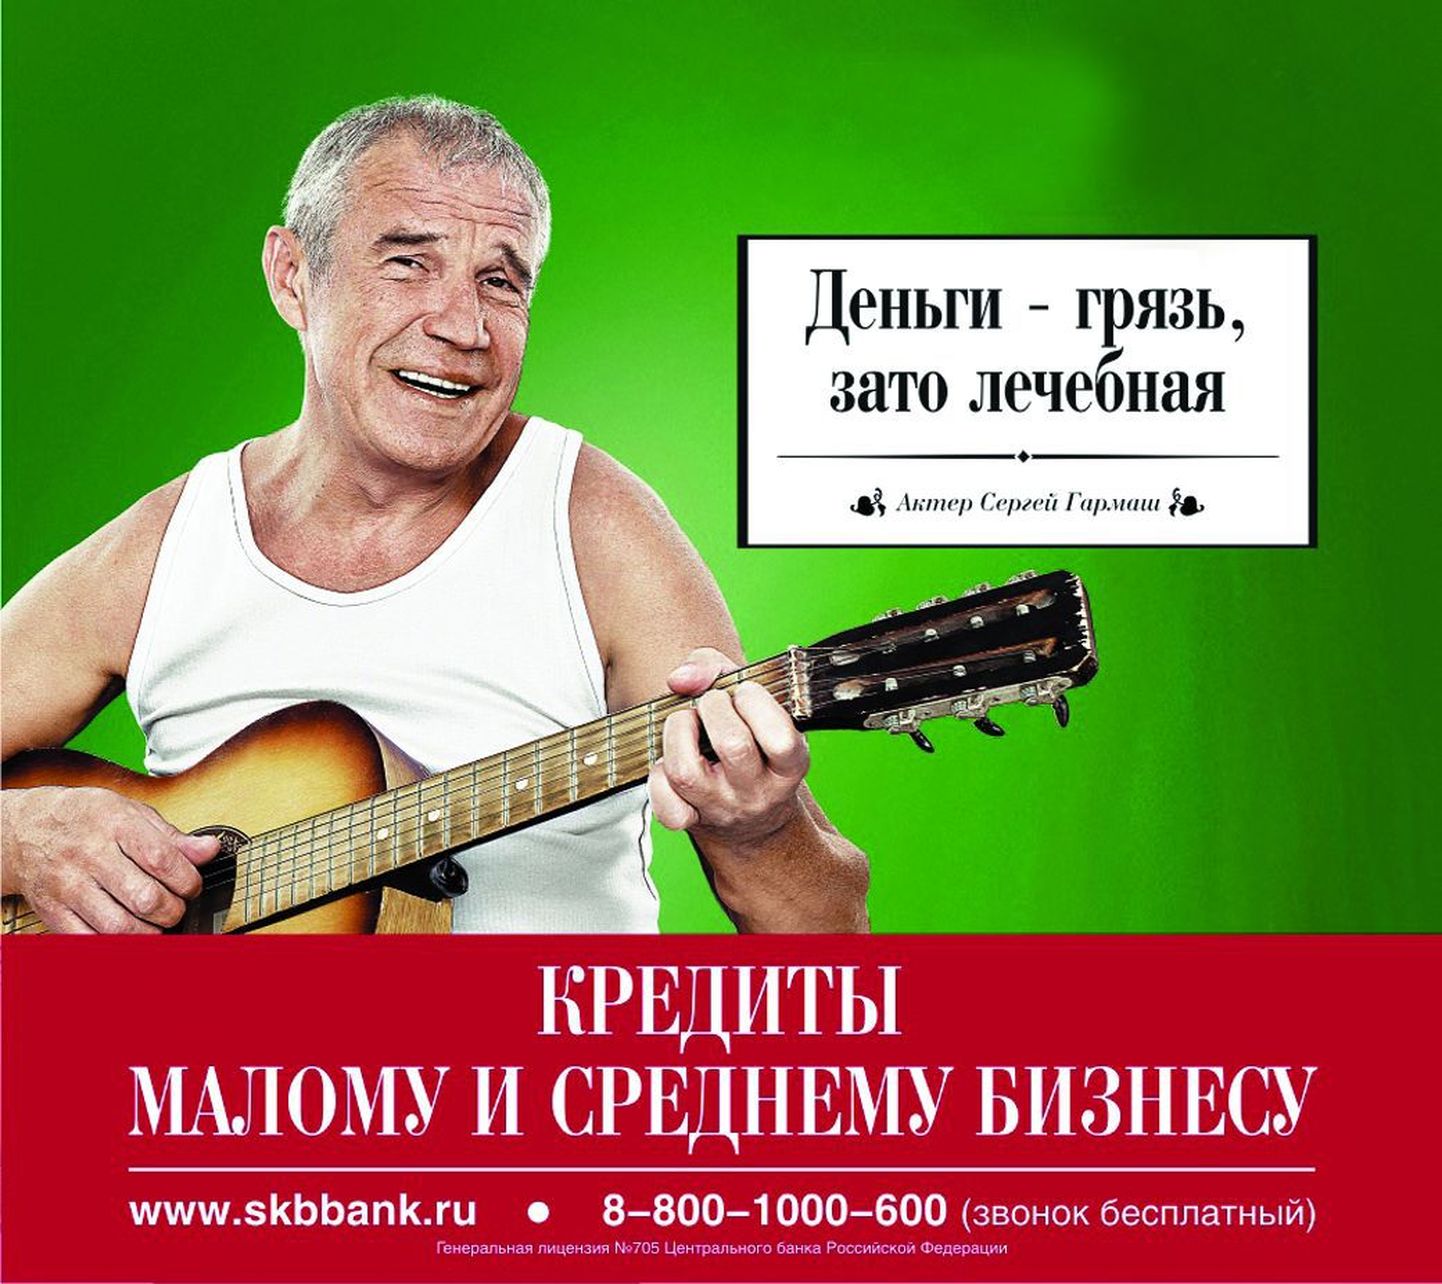 Сергей Гармаш поучаствовал в рекламе